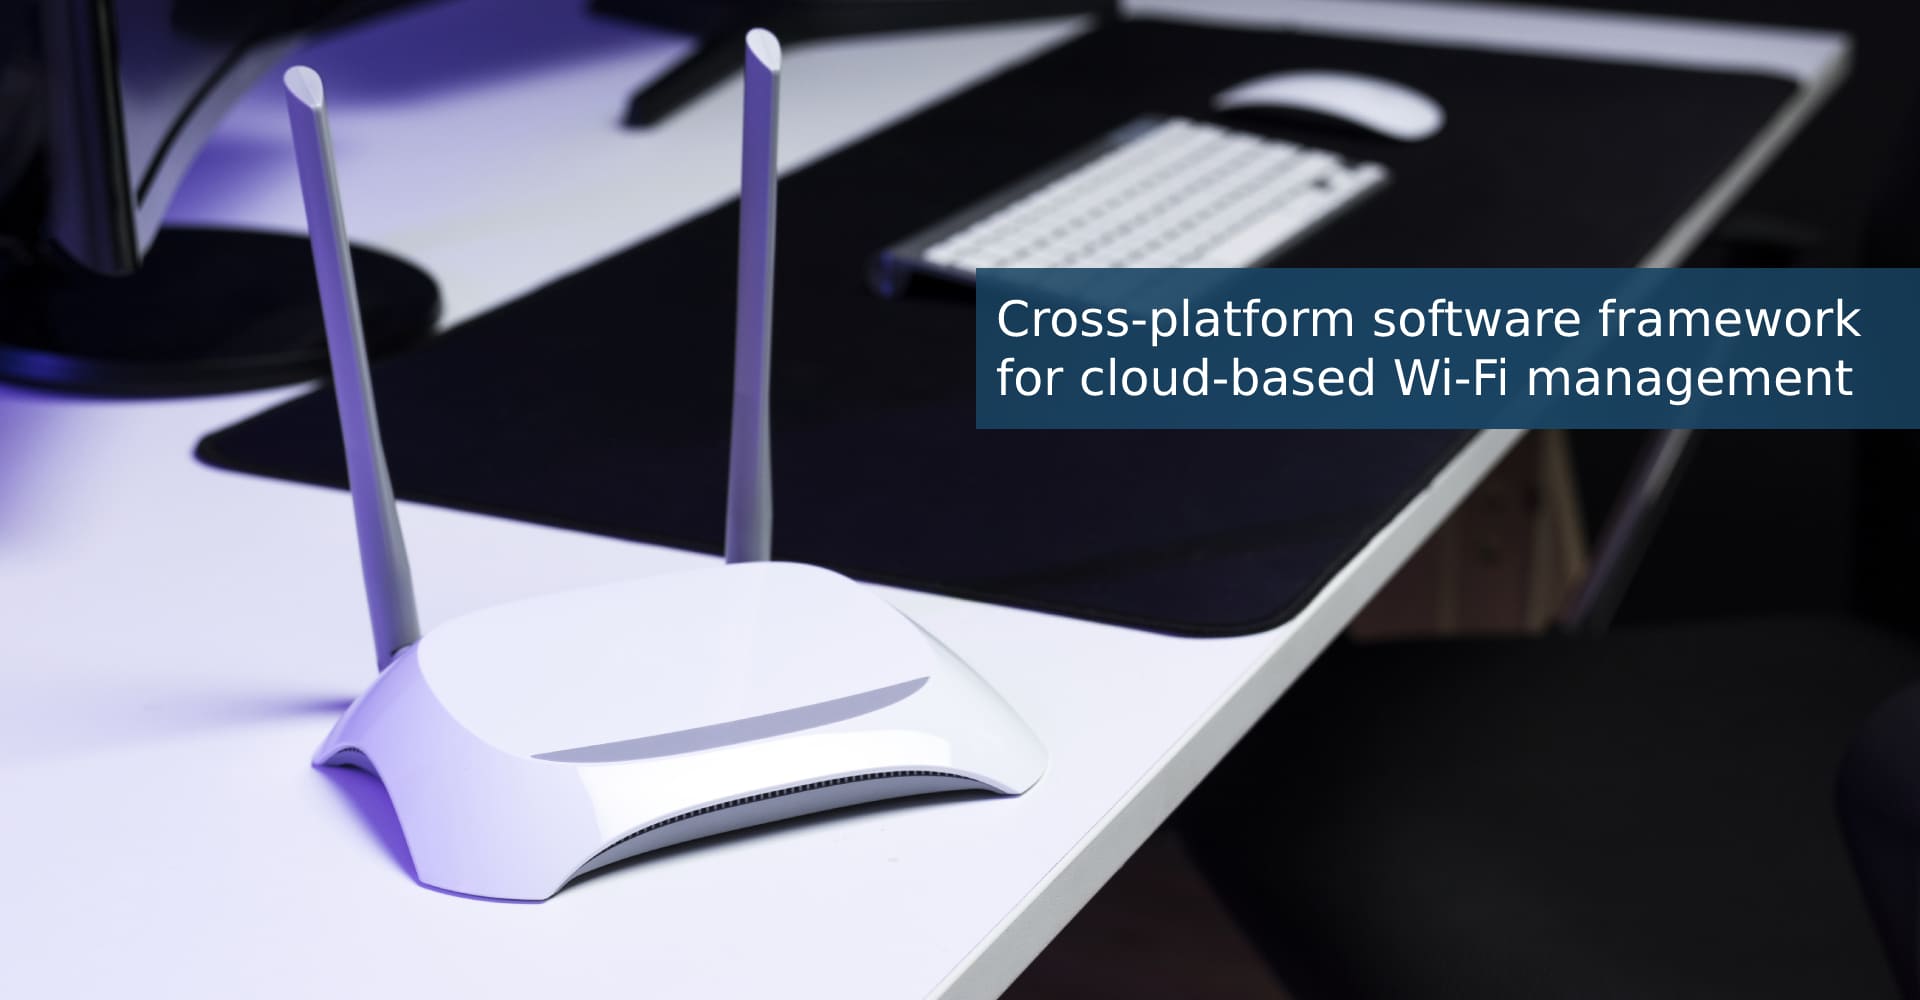 Cross-platform software framework for SaaS cloud-based Wi-Fi management platform provider